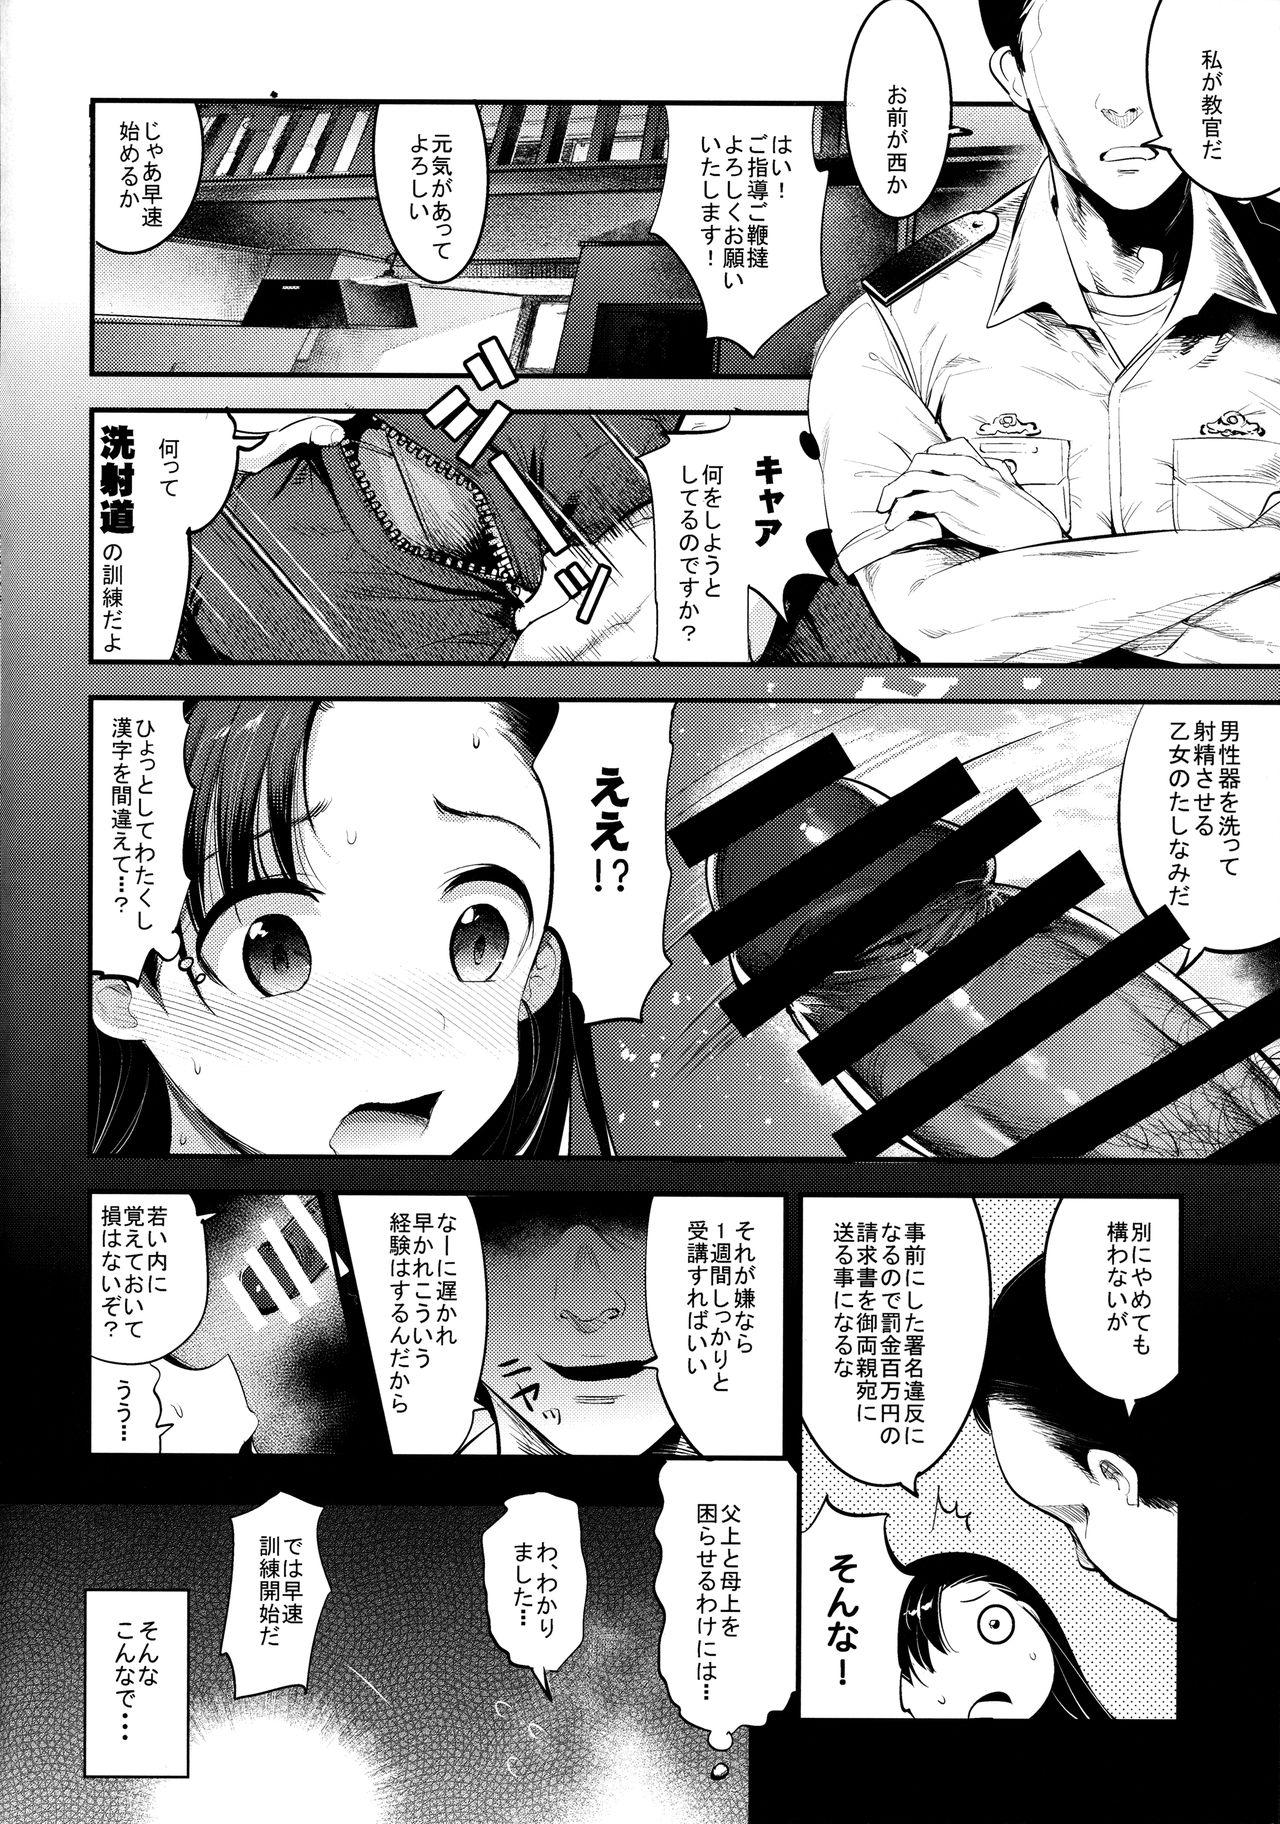 Bribe GirlPan Rakugakichou 4 - Girls und panzer Machine - Page 10